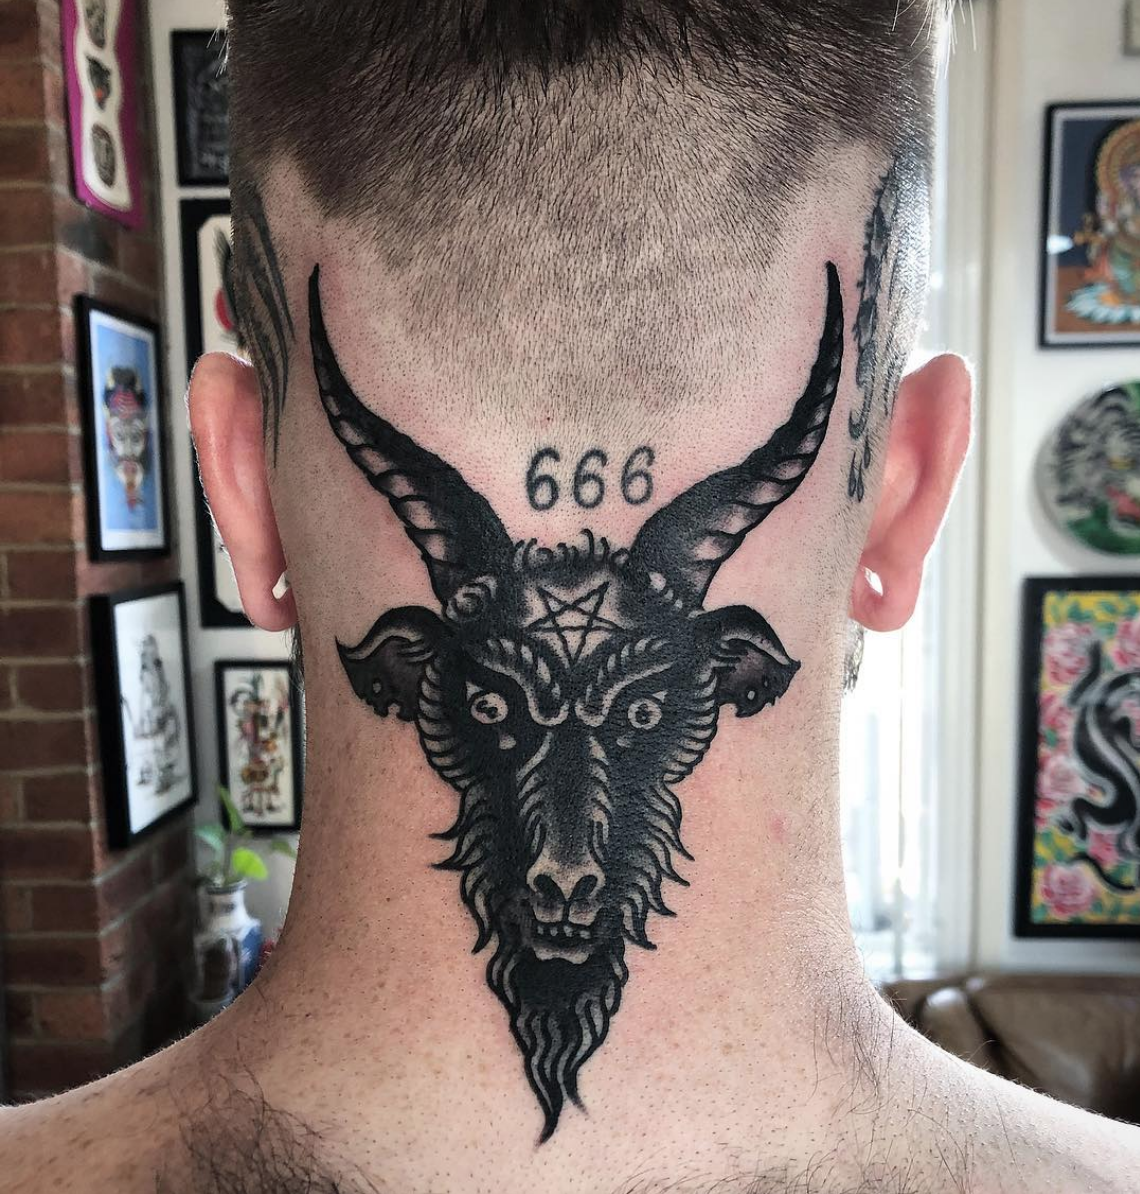 Với ma quỷ tattoo 666, bạn sẽ được trải nghiệm những hình ảnh ma mị, đầy tinh túy và sâu sắc. Tại đây, những nghệ sĩ tài năng sẽ tư vấn giúp bạn chọn mẫu xăm phù hợp với tính cách của mình và mang lại cho bạn cảm giác tự tin khi diện những bộ trang phục đầy phong cách.